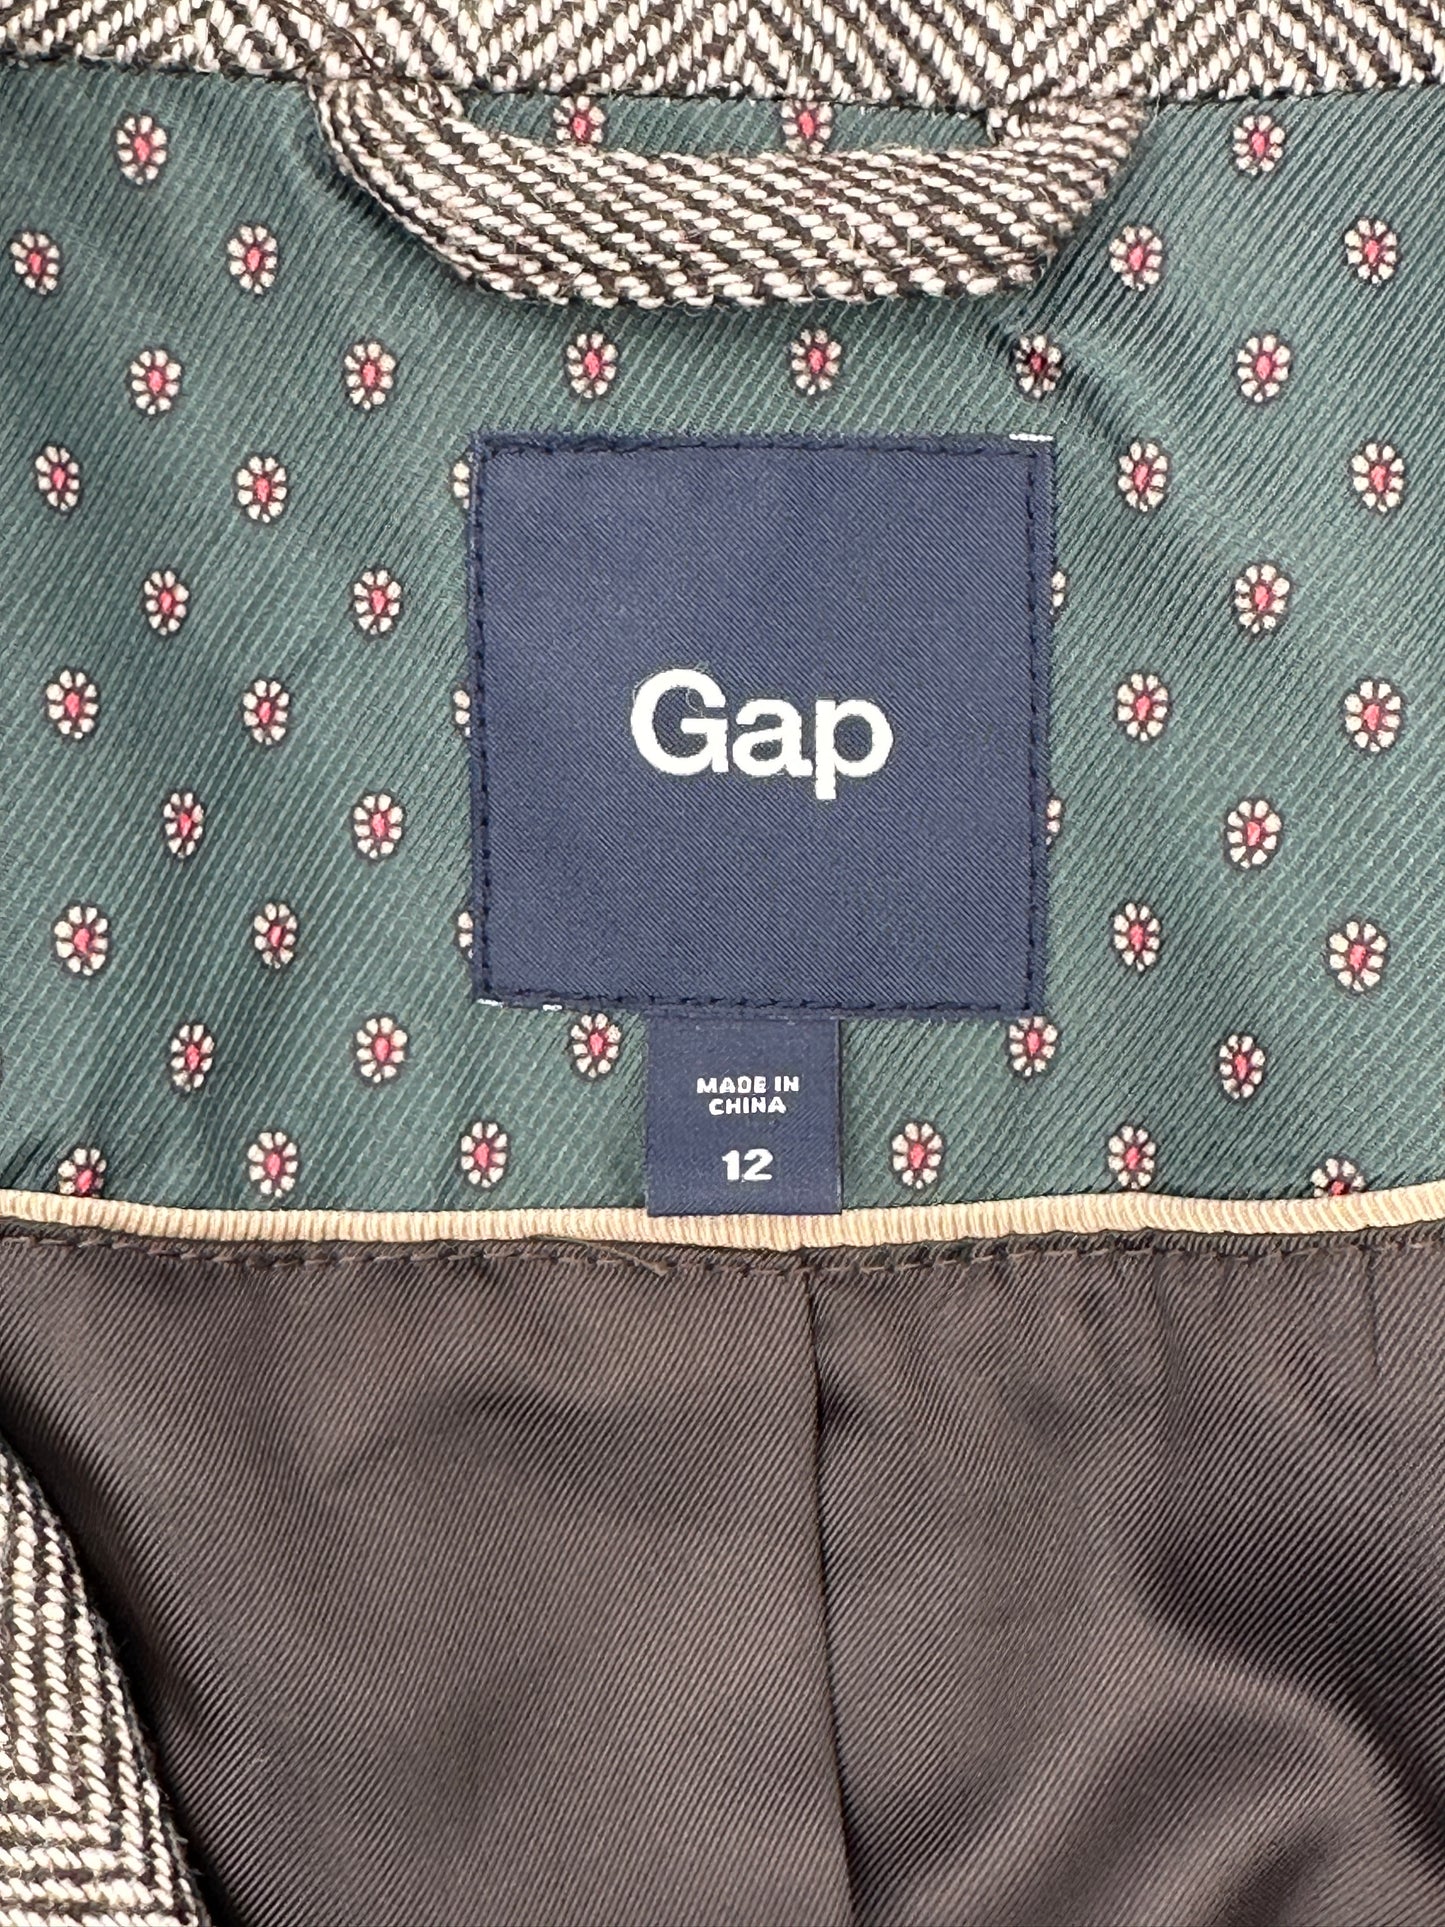 Gap Size 12 Brown Herringbone Tweed Wool Blend Blazer Jacket